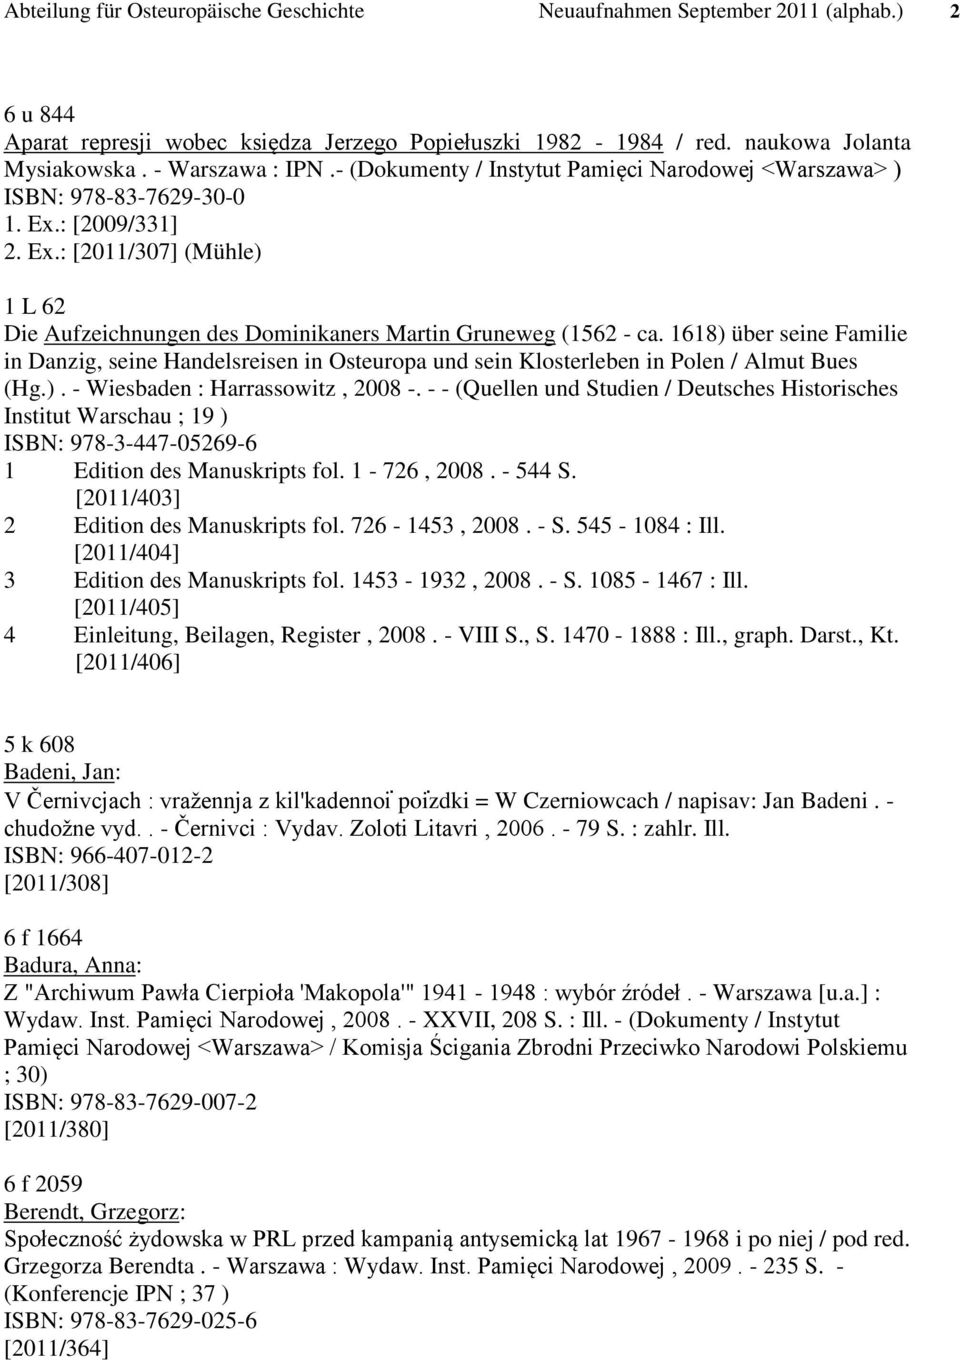 1618) über seine Familie in Danzig, seine Handelsreisen in Osteuropa und sein Klosterleben in Polen / Almut Bues (Hg.). - Wiesbaden : Harrassowitz, 2008 -.